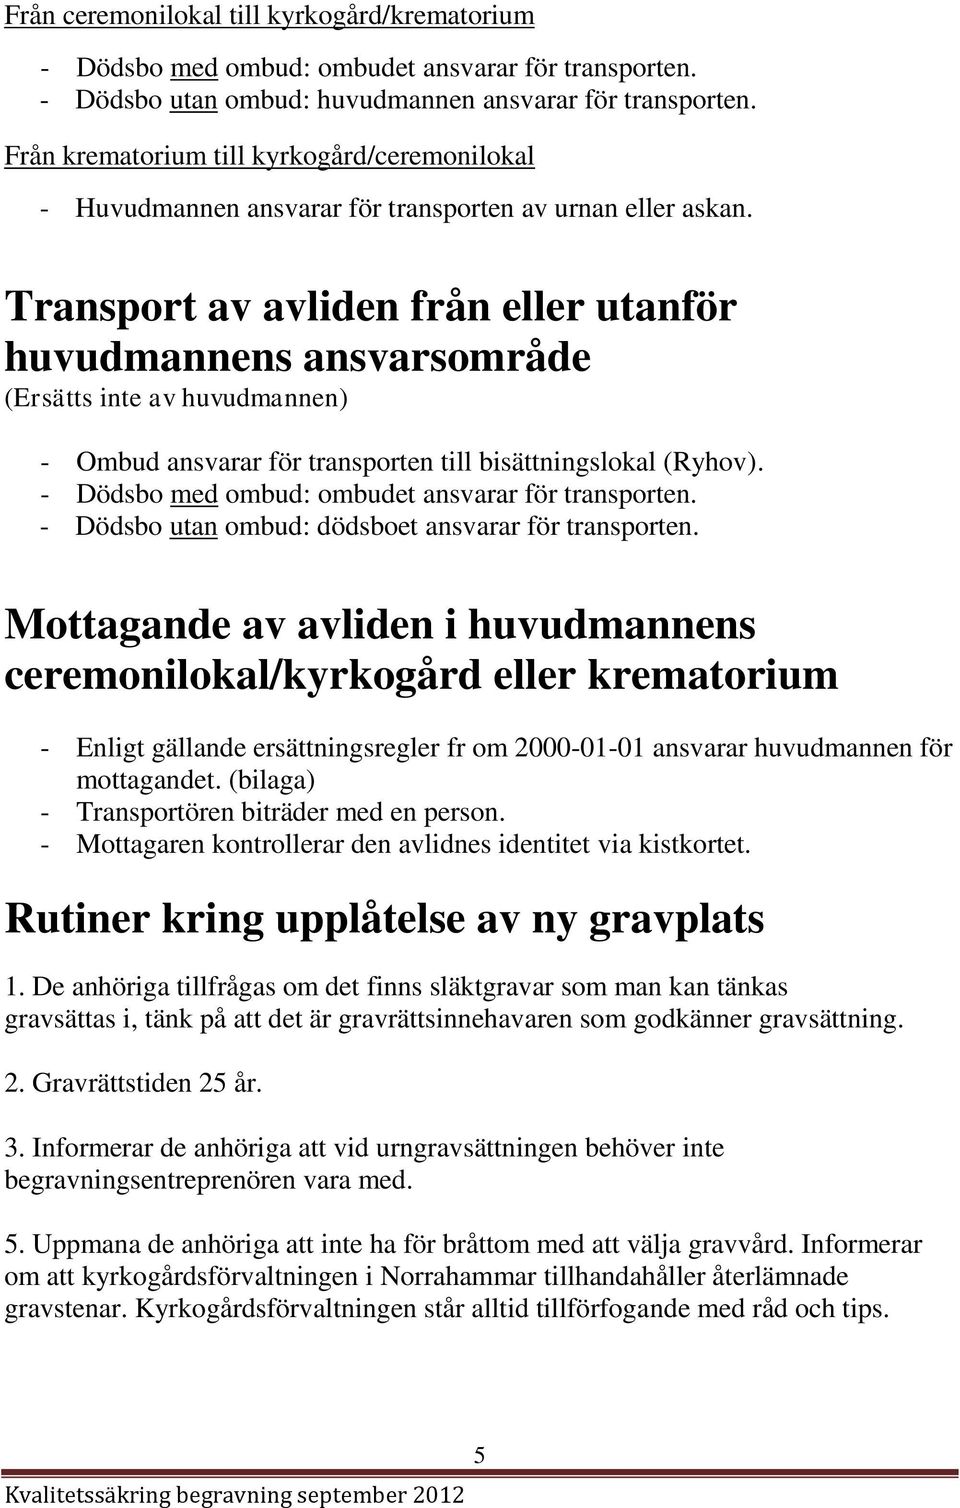 Transport av avliden från eller utanför huvudmannens ansvarsområde (Ersätts inte av huvudmannen) - Ombud ansvarar för transporten till bisättningslokal (Ryhov).